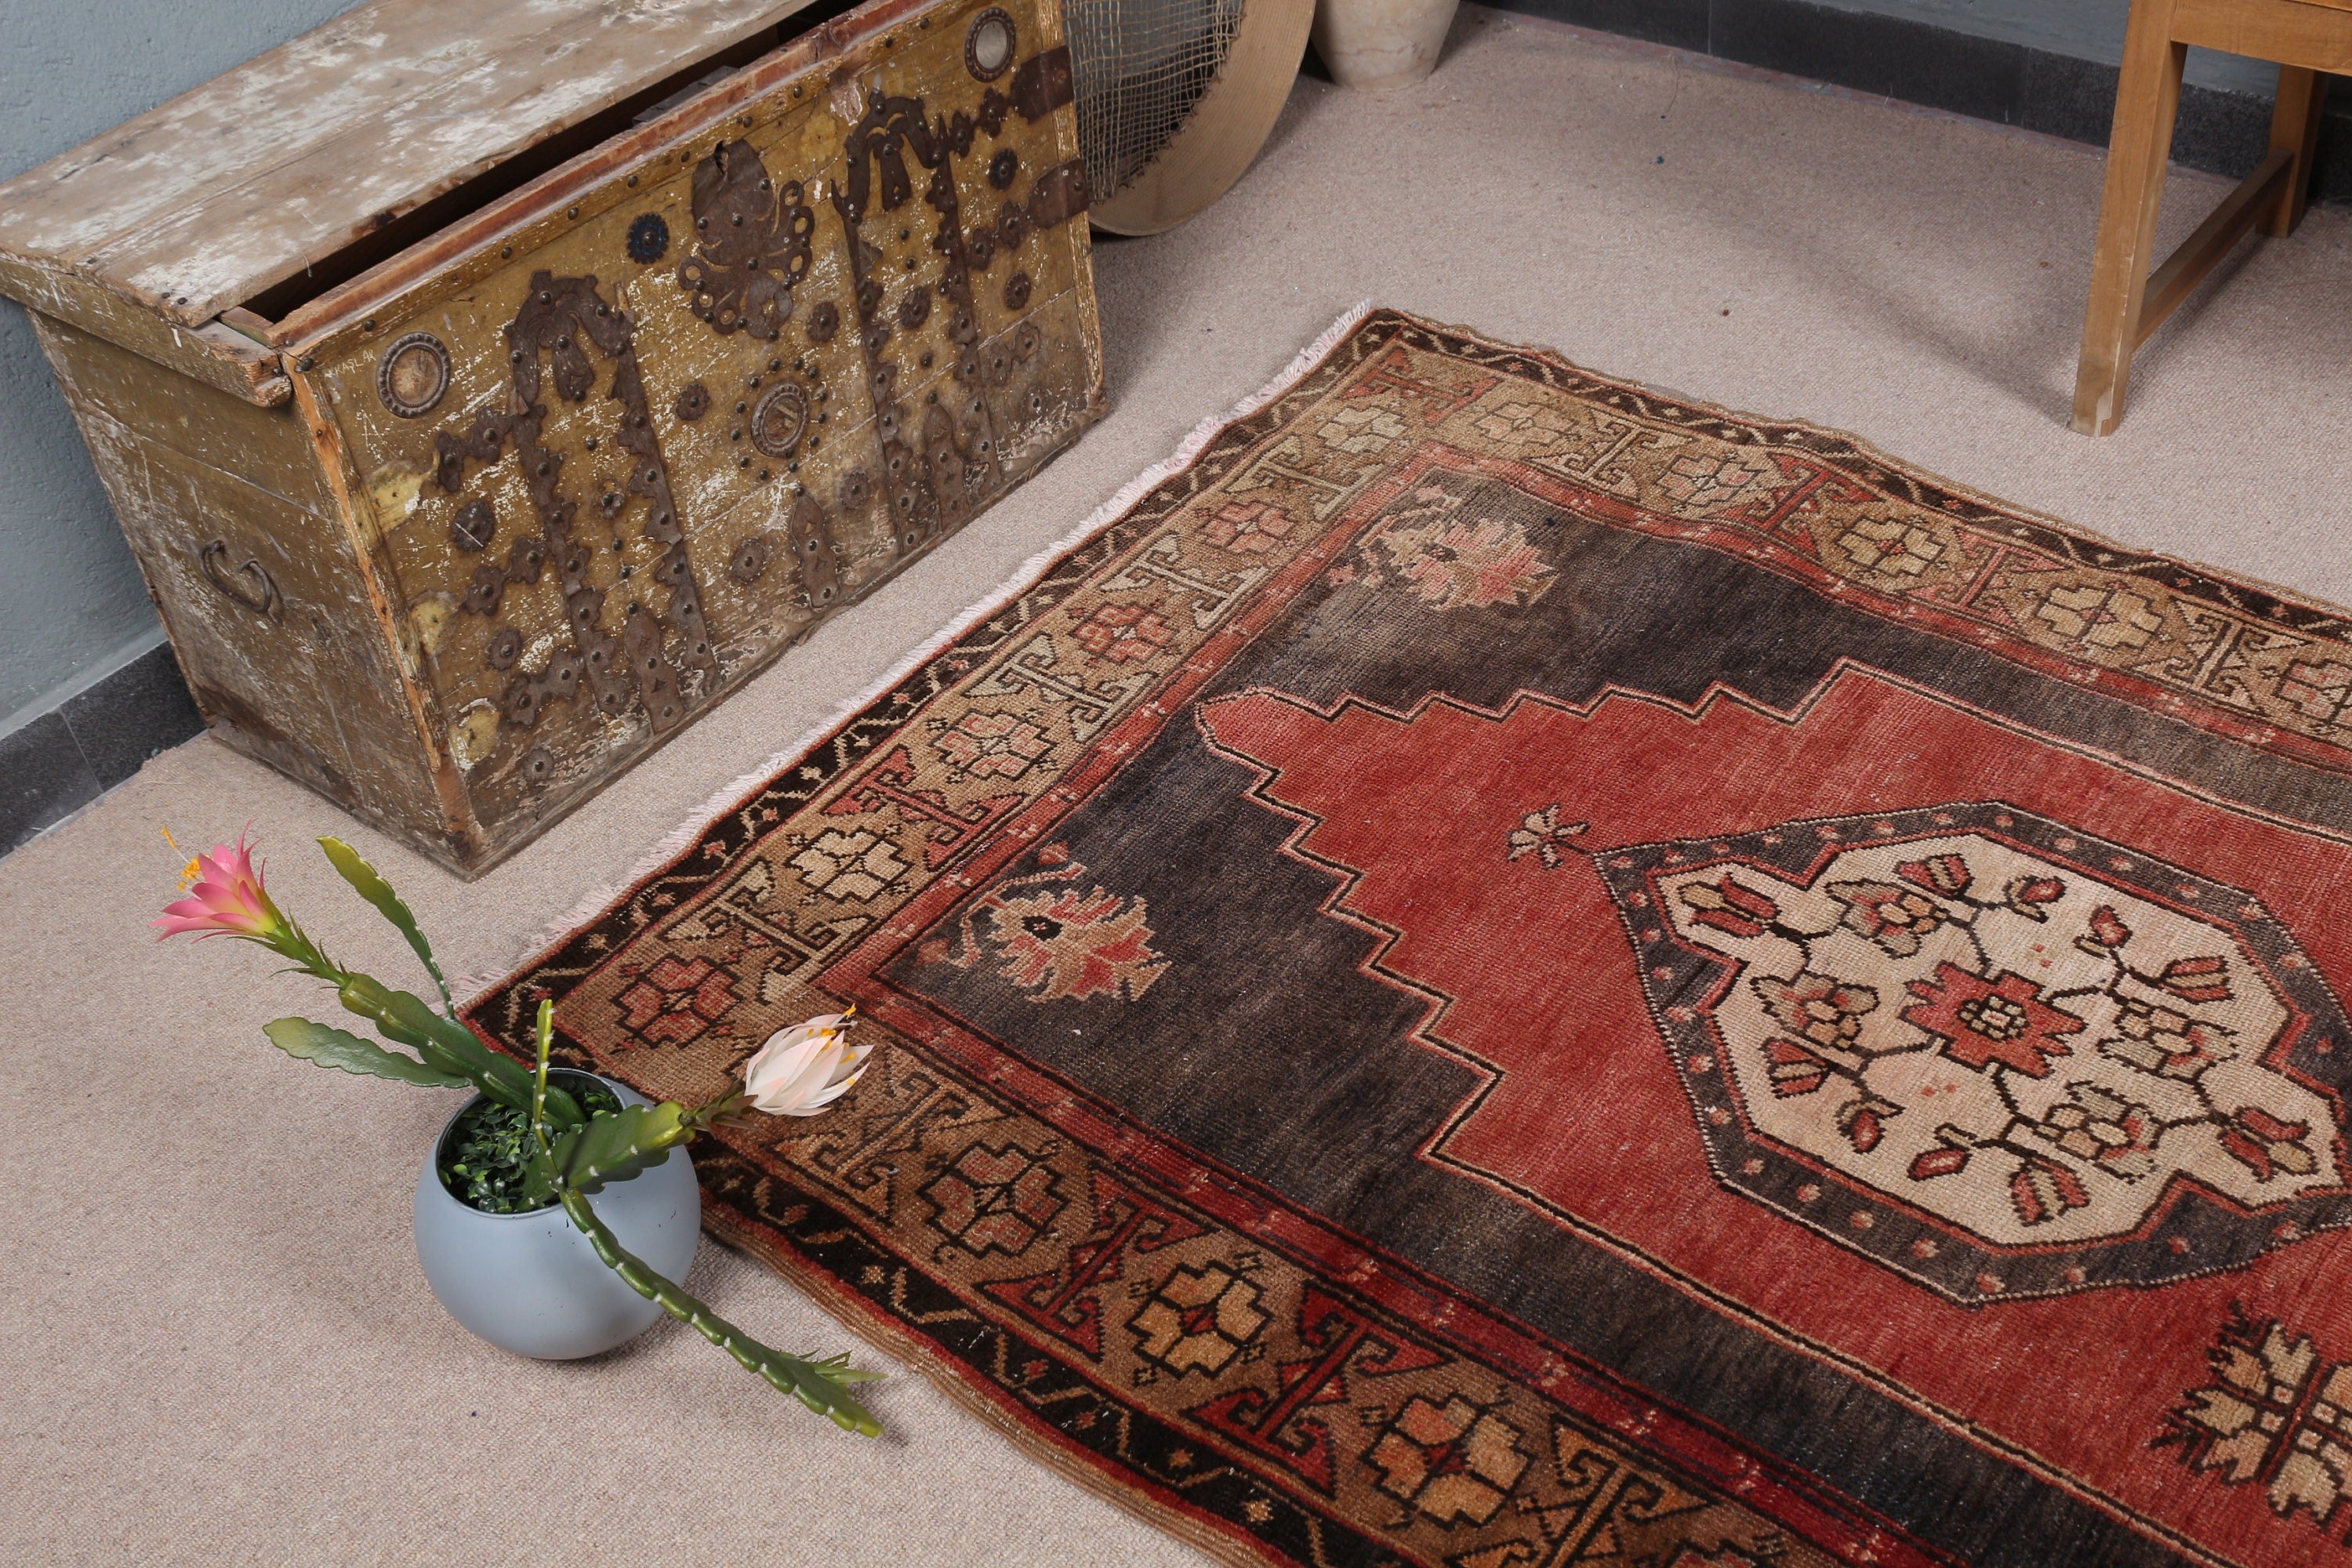 Vintage Rug, Bedroom Rug, 4.1x8 ft Area Rugs, Turkish Rug, Rugs for Floor, Red Antique Rug, Dining Room Rug, Wool Rugs